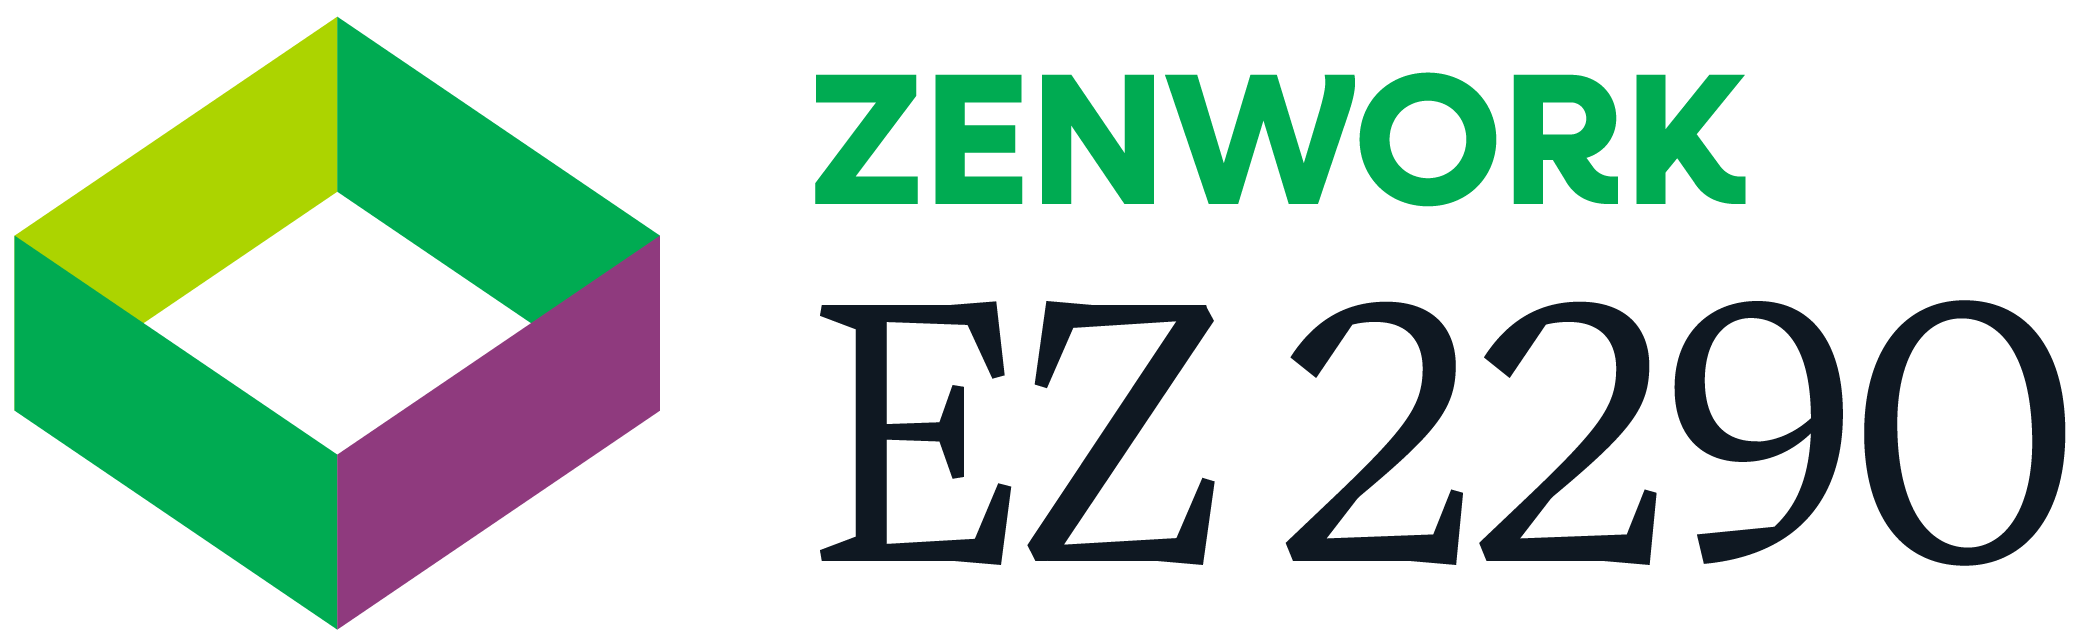 EZ2290.com